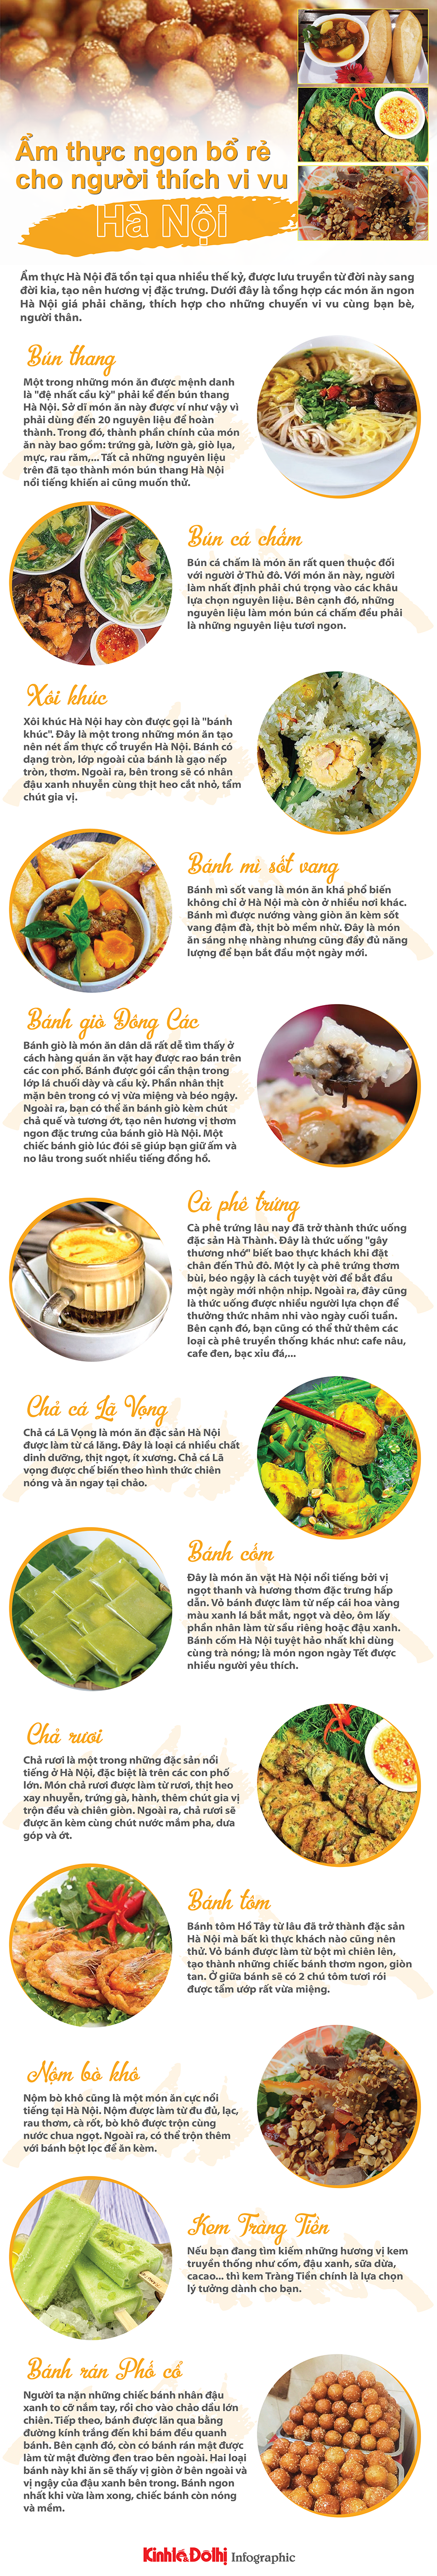 Những món ăn ngon, bổ, rẻ ở Hà Nội khiến du khách thích mê - Ảnh 1